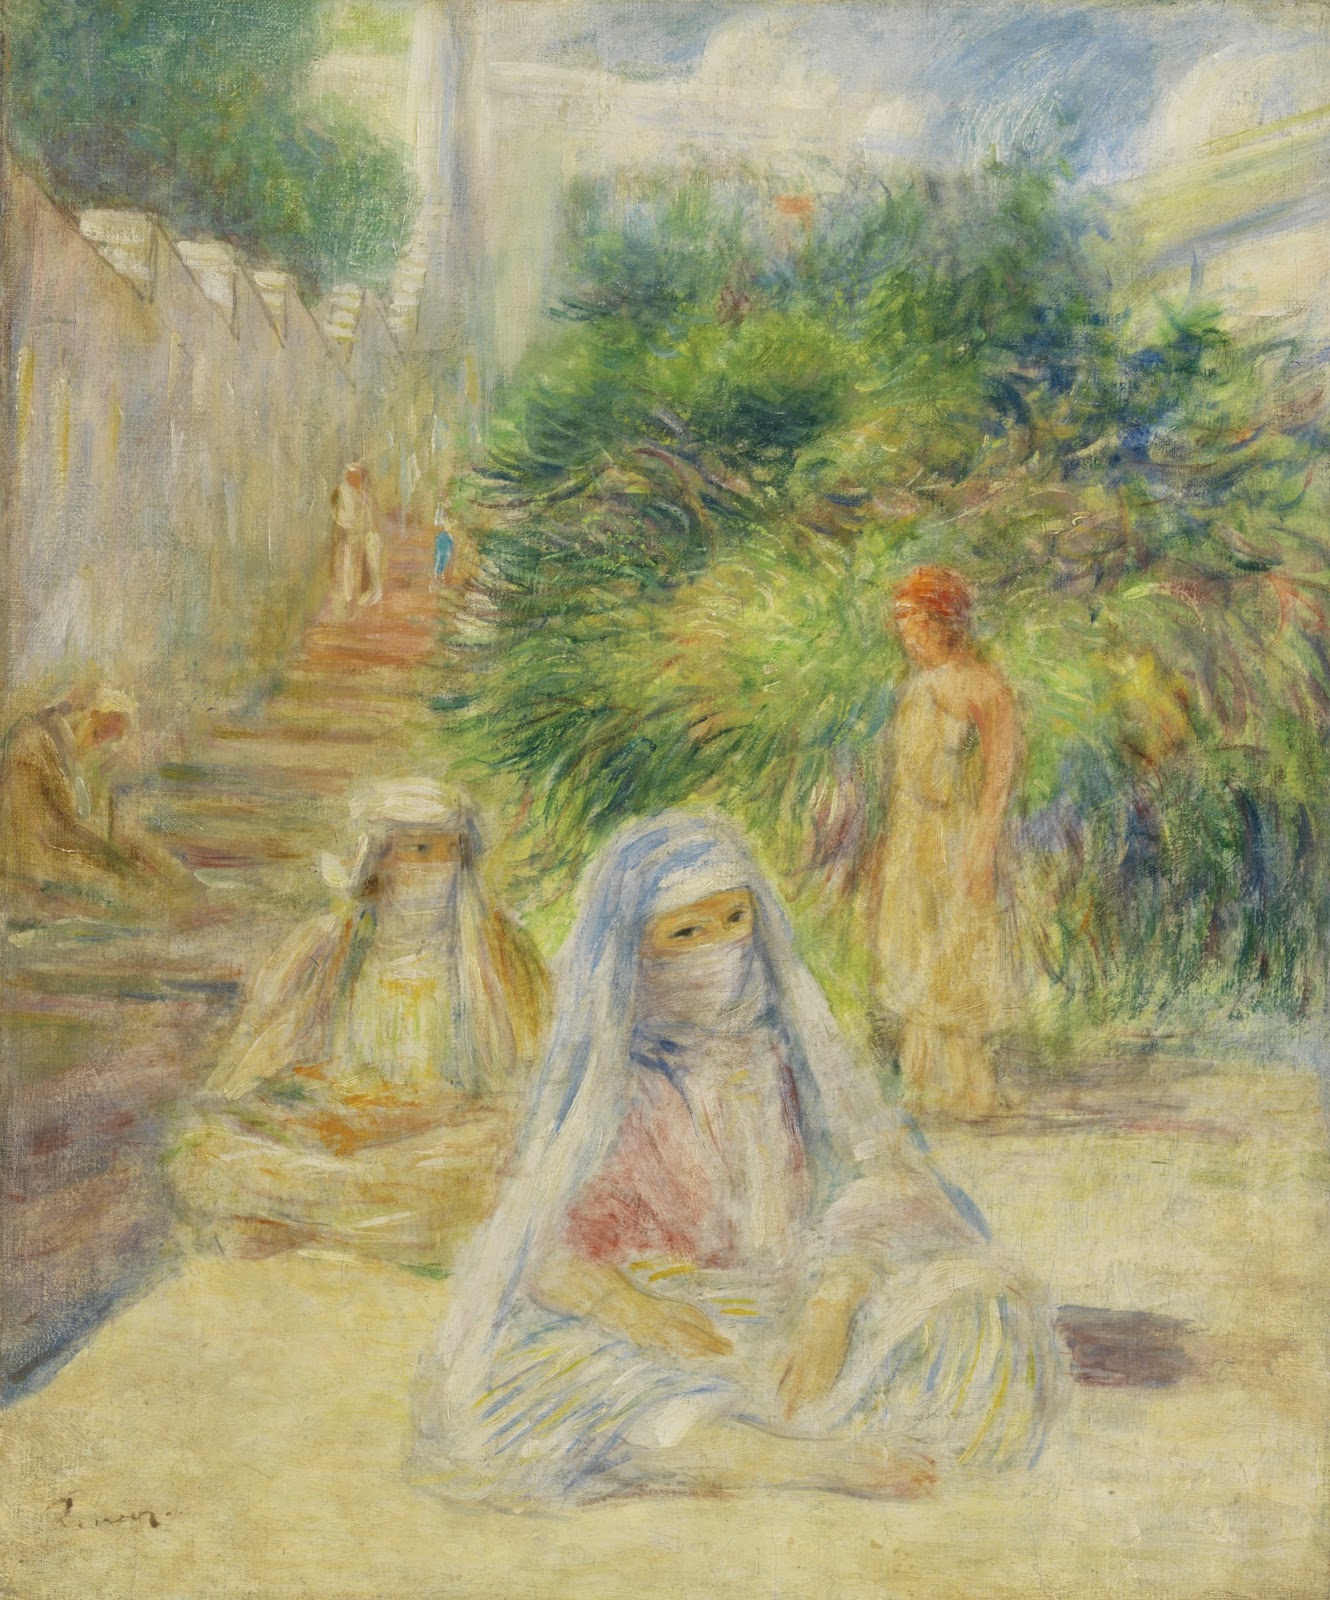 Pierre+Auguste+Renoir-1841-1-19 (743).jpg